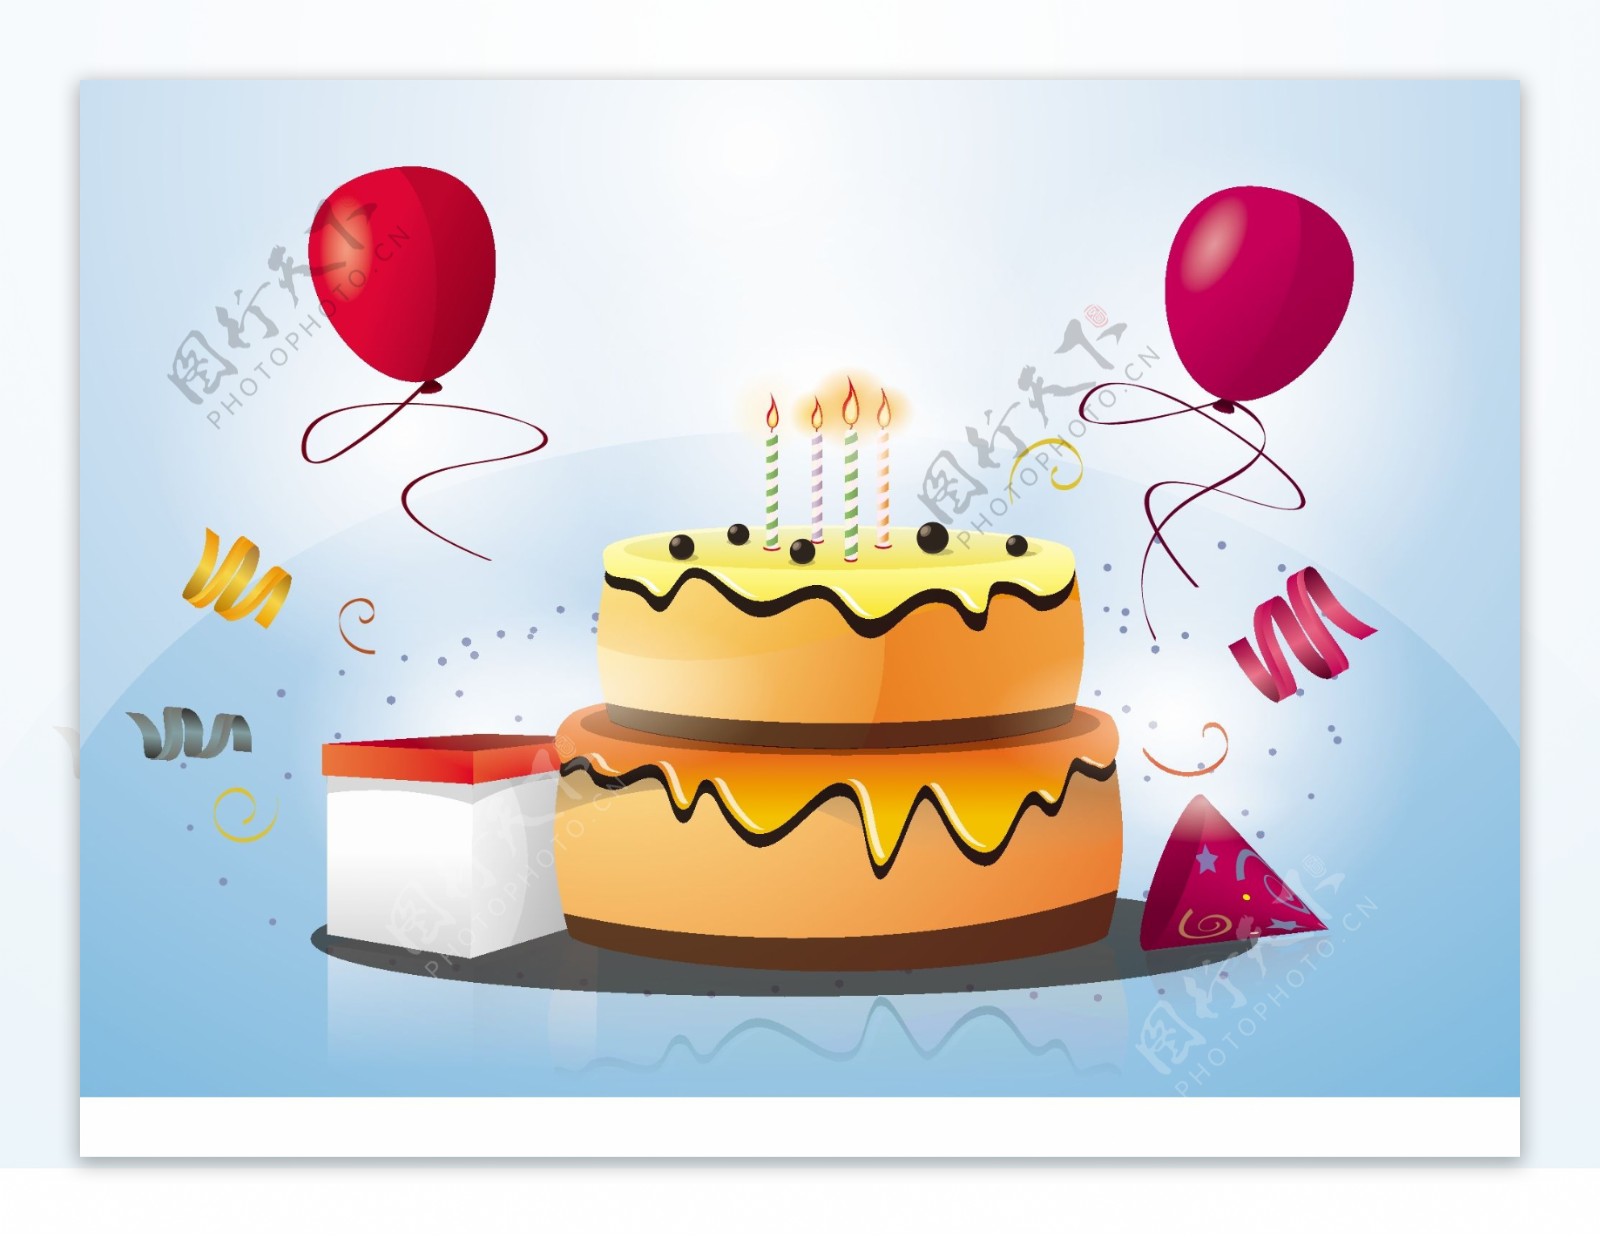 生日蛋糕食品图标背景图案